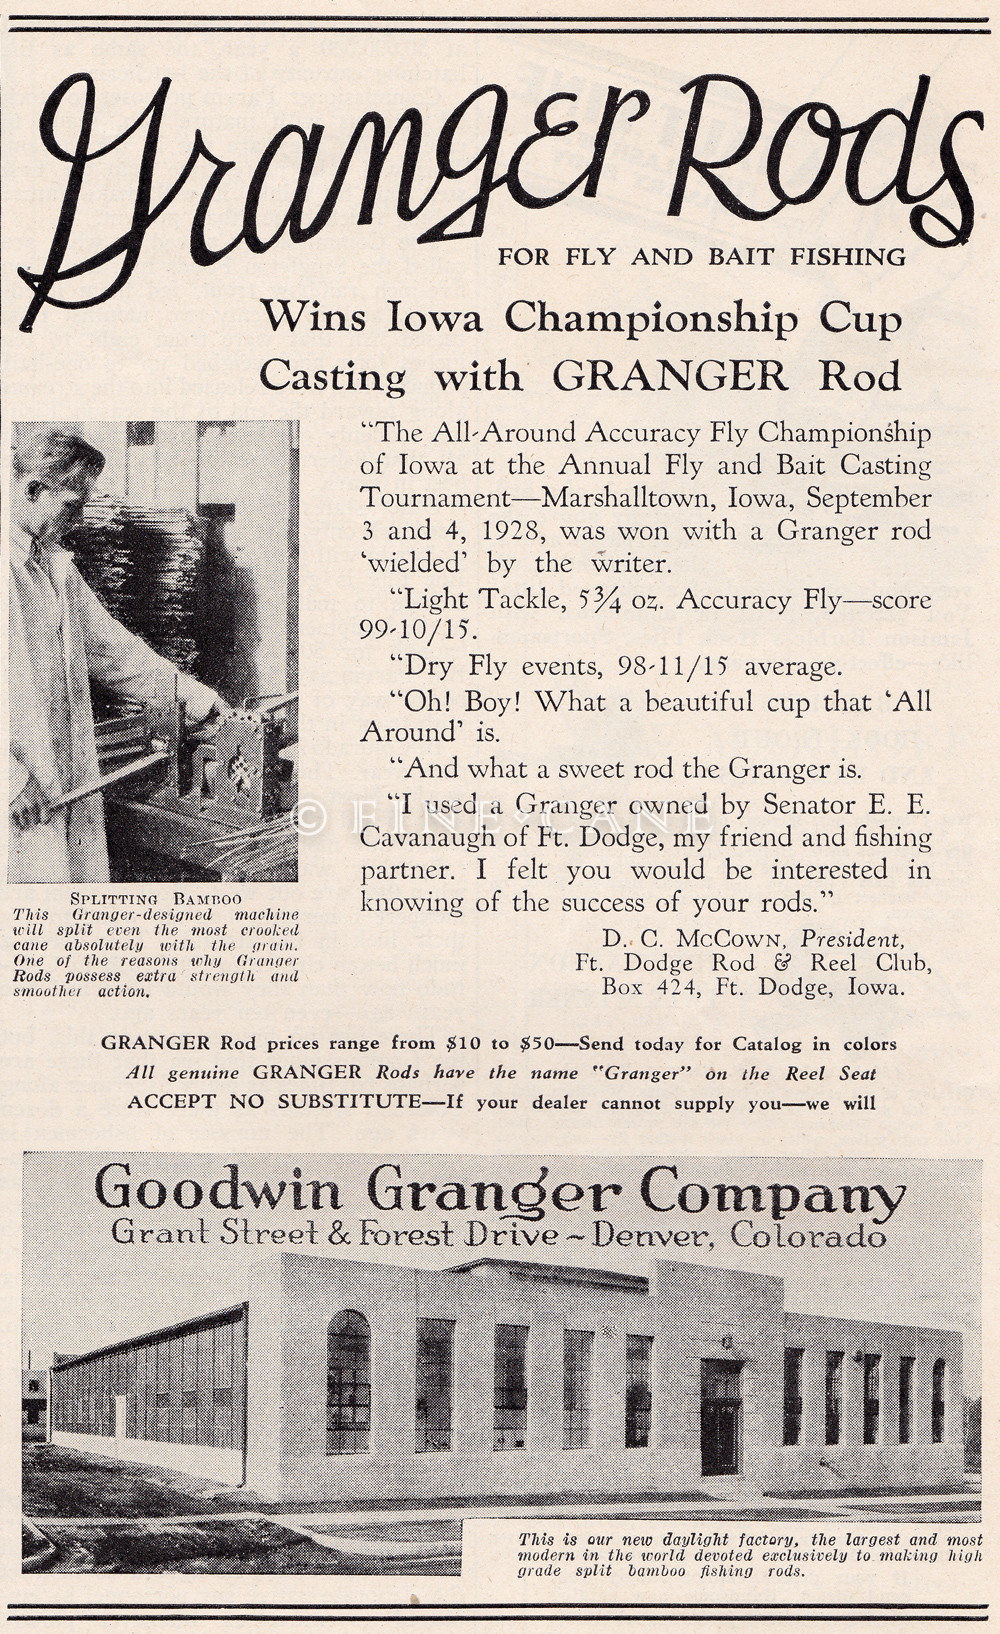 March 1929 Field & Stream Ad